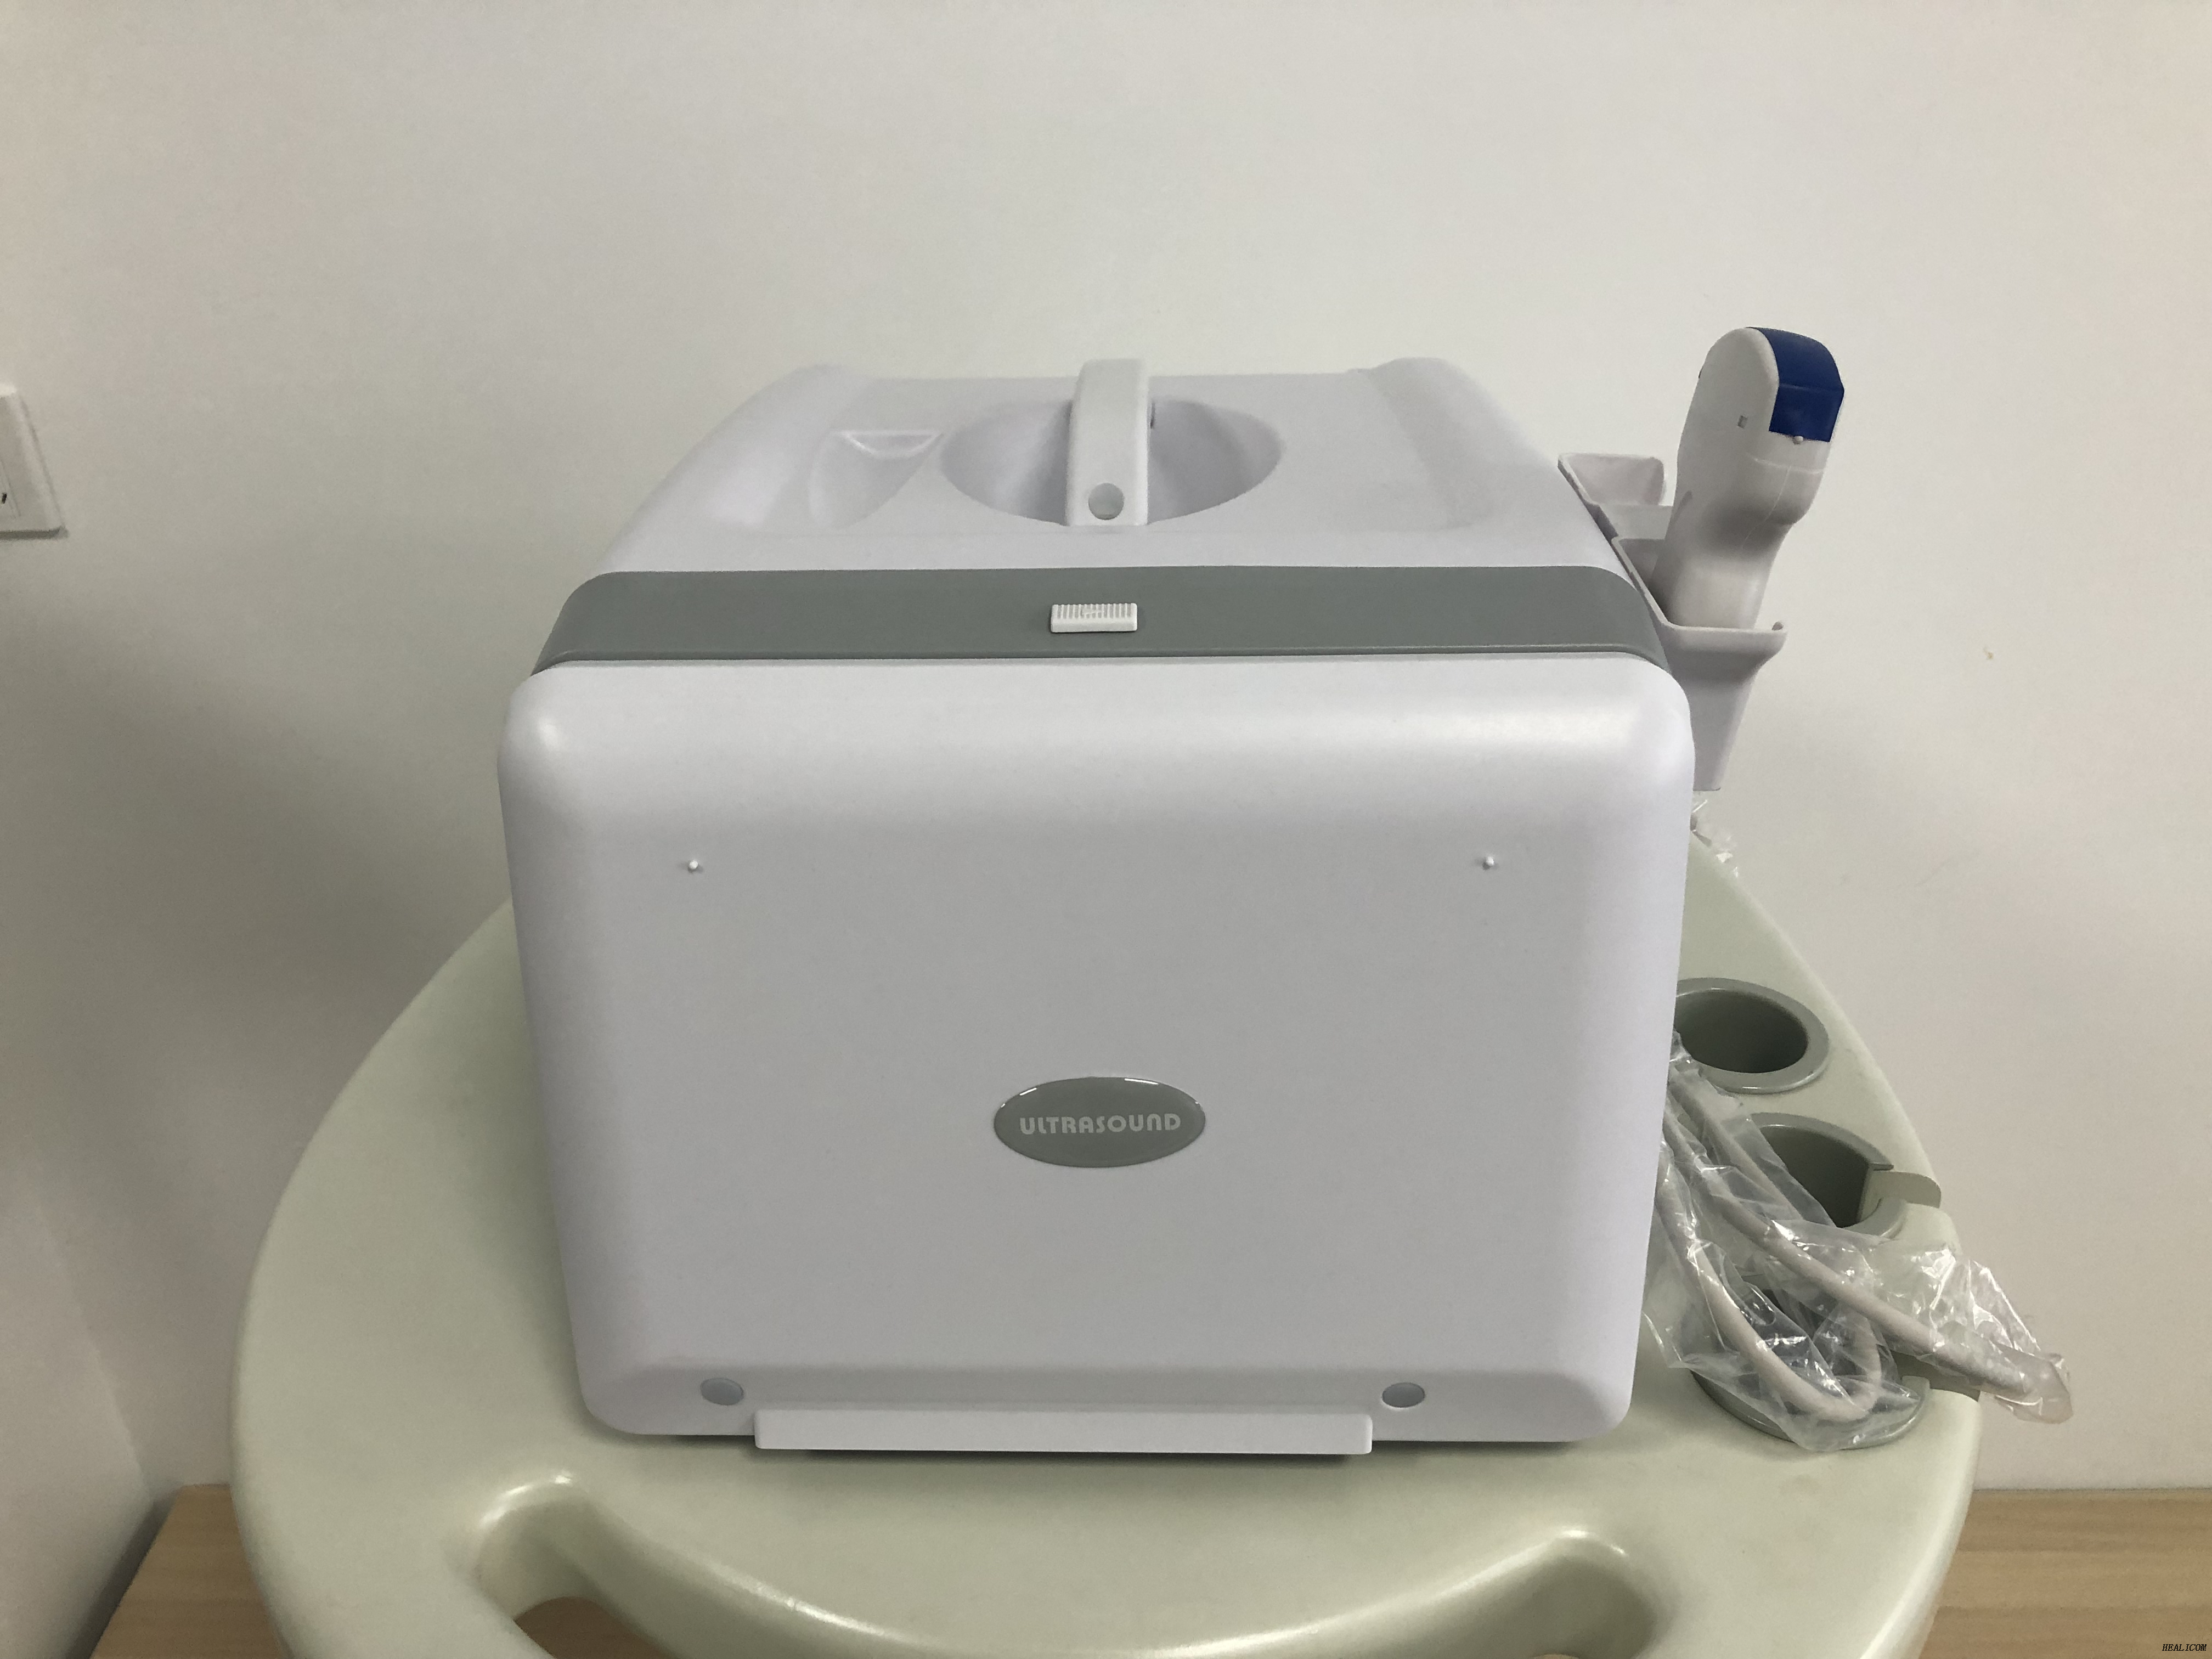 Apparecchiatura medica HBW-2 scanner ad ultrasuoni in modalità portatile ad ultrasuoni